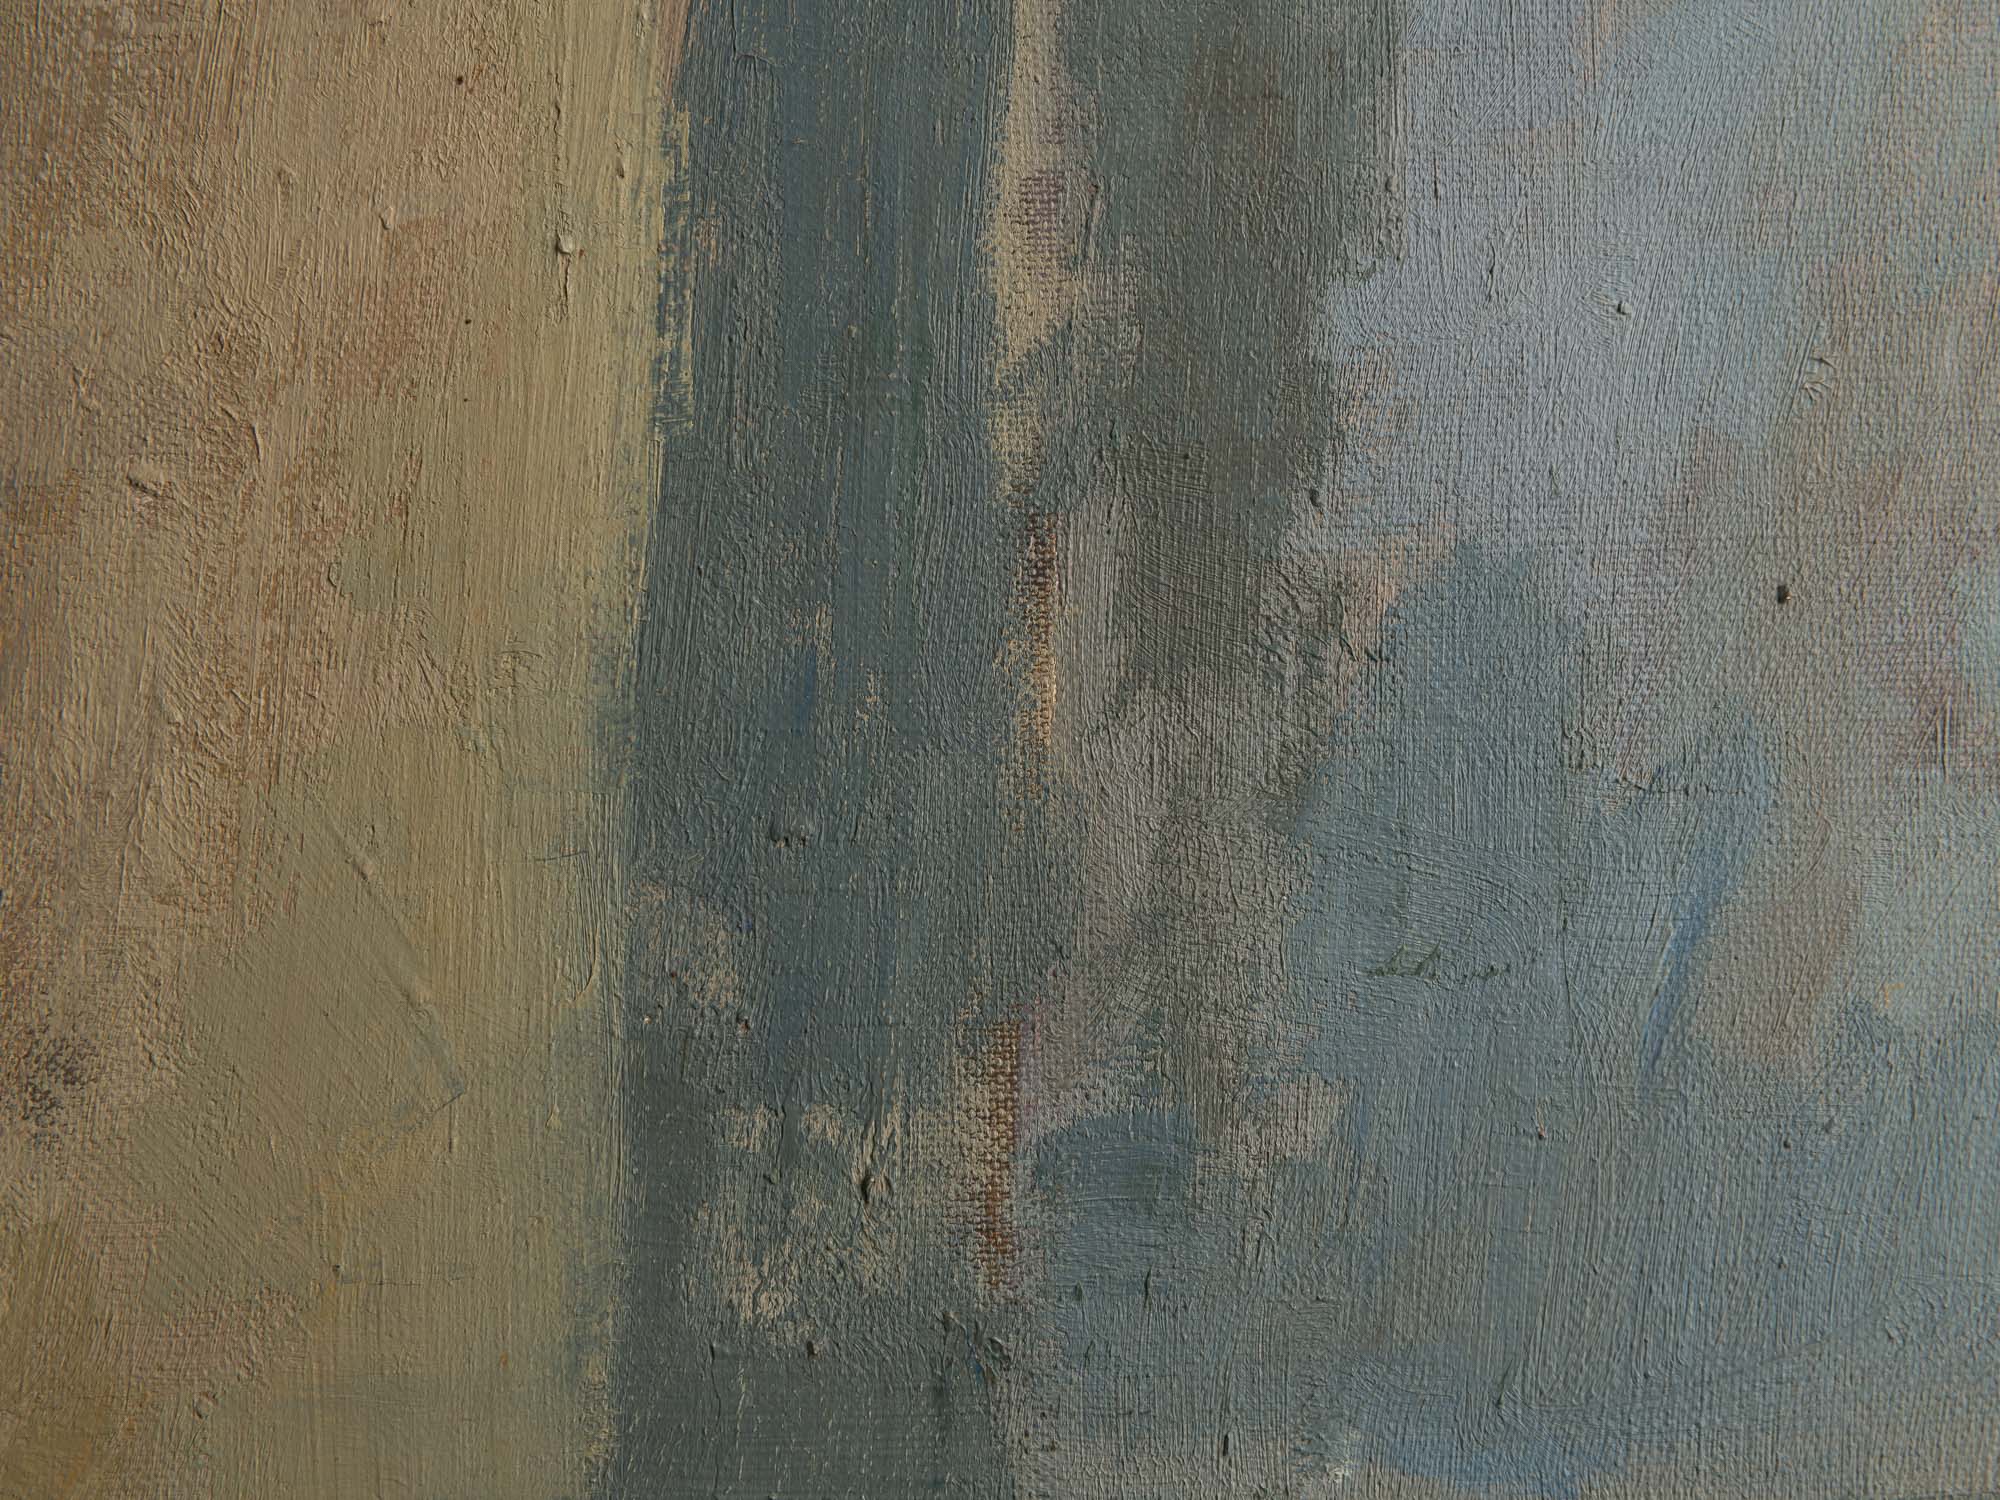 Vie silencieuse, huile sur toile de Claude Foënet, France (1965)..Silent life, oil on canvas by Claude Foënet, France (1965)